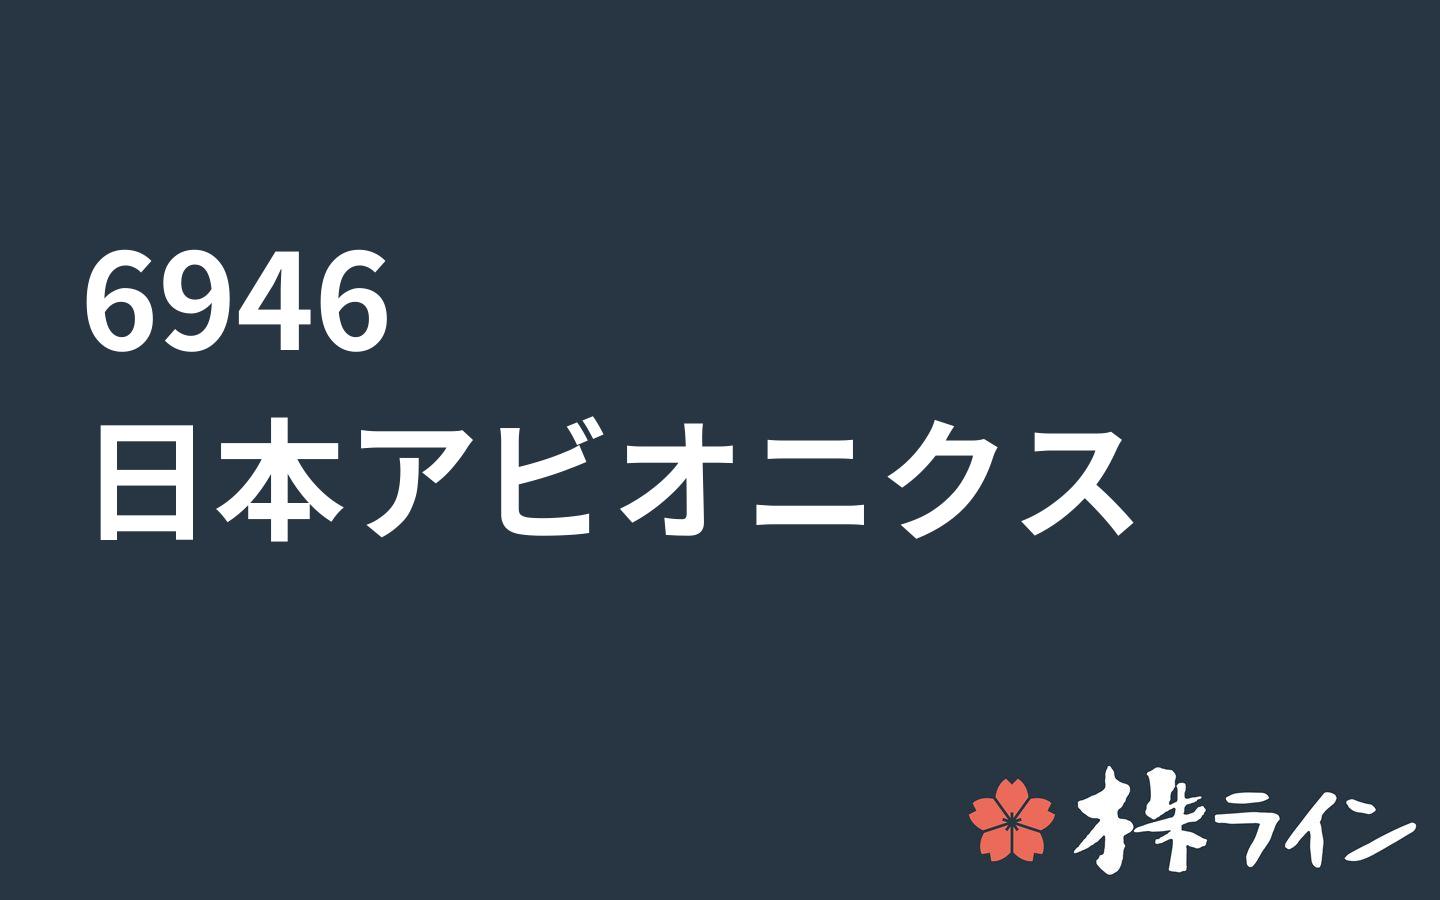 日本アビオニクス 6946 株価予想 ツイッター投資家のリアルタイム売買 株ライン